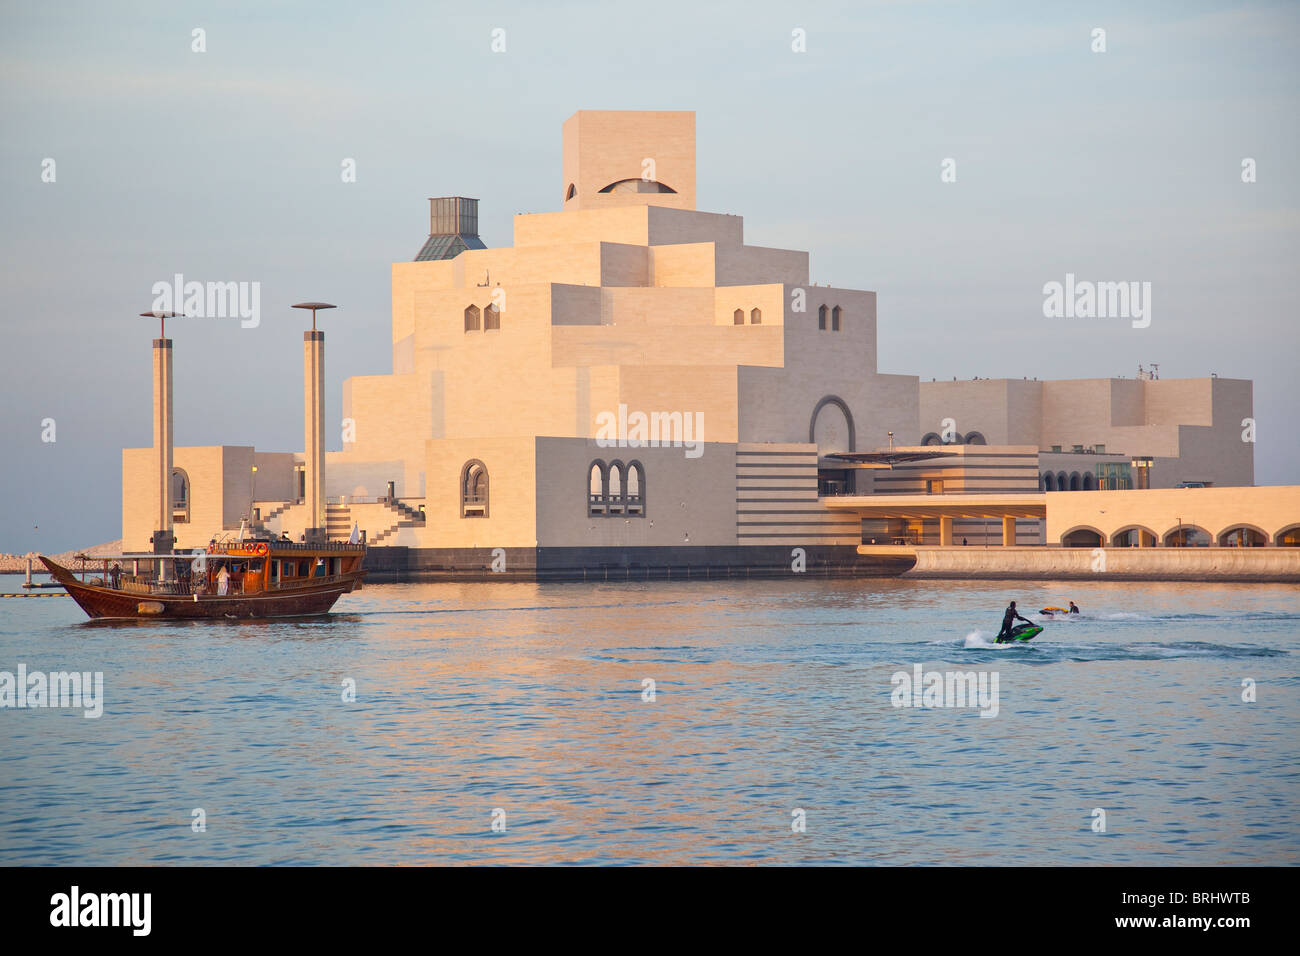 Musée d'Art islamique de Doha, Qatar Banque D'Images